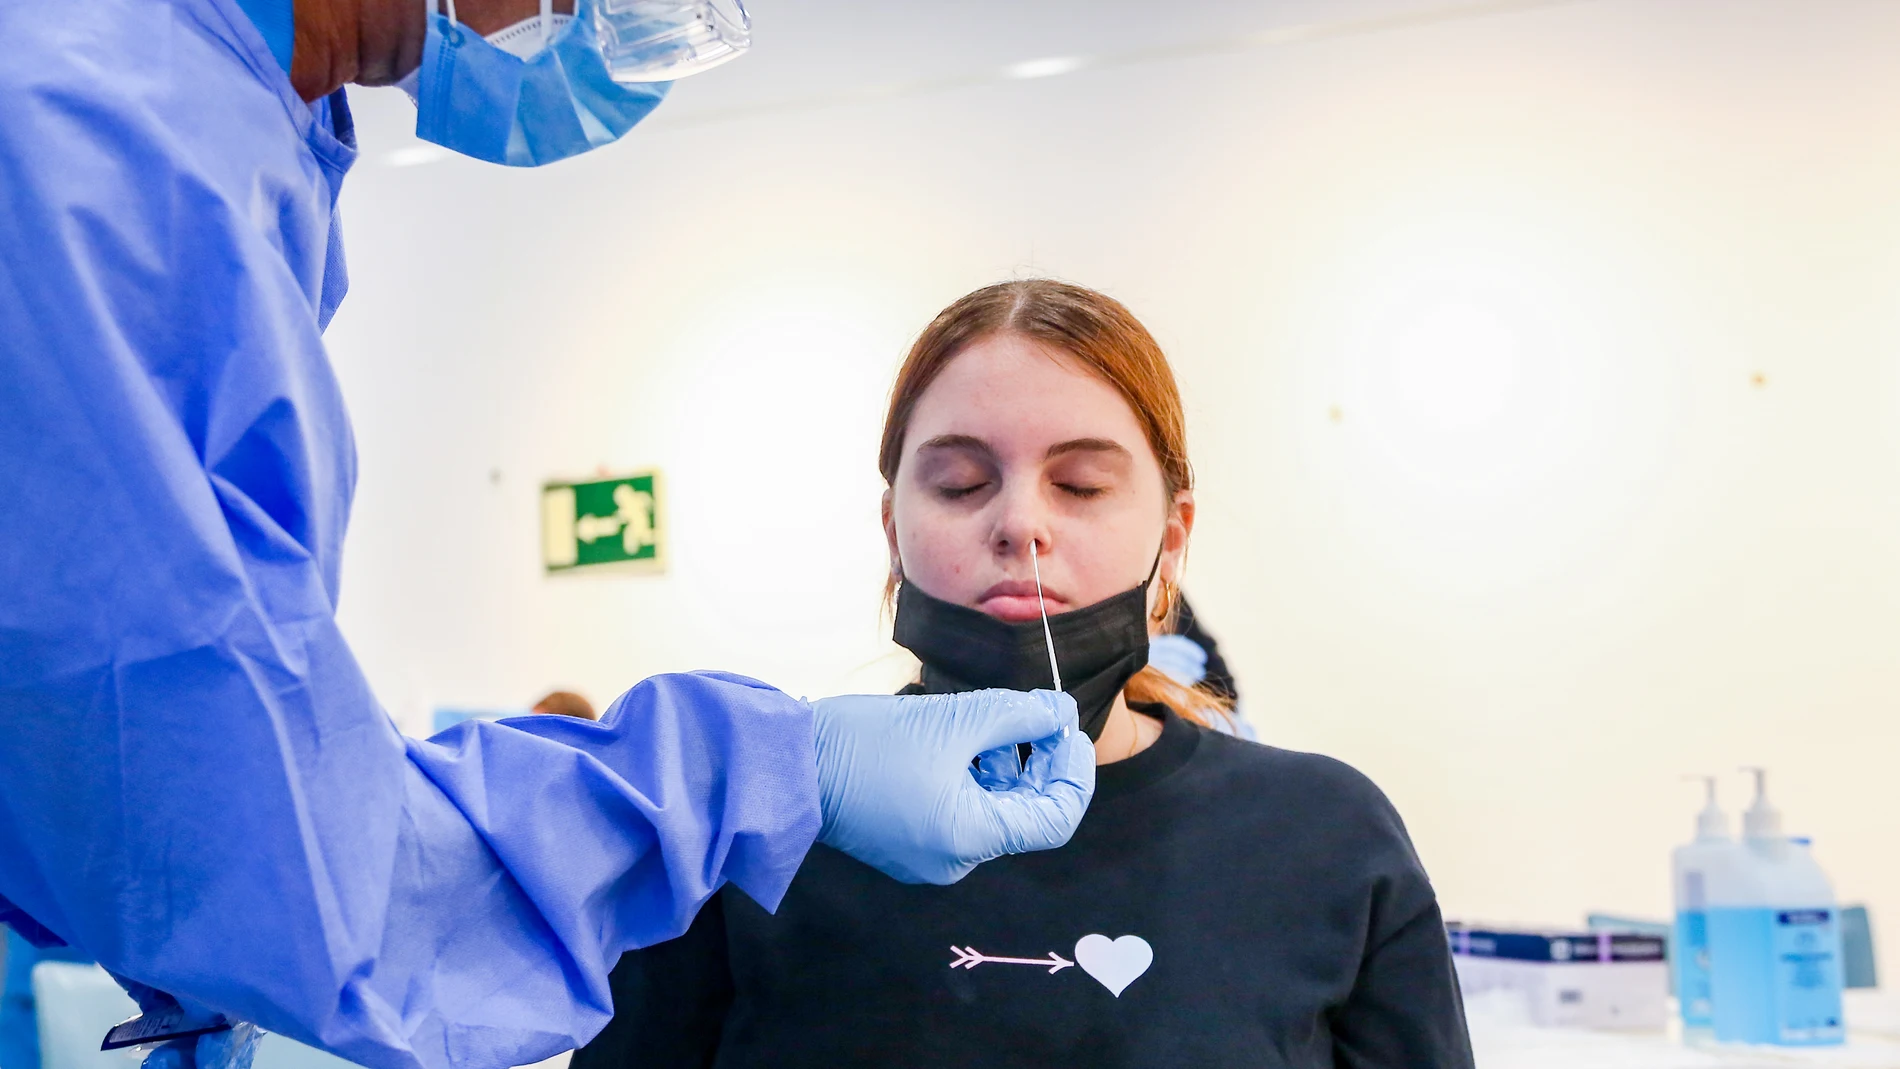 Un sanitario realiza un test de antígenos en Puente de Vallecas para detectar la Covid, uno de cuyos síntomas es la pérdida del gusto y el olfato